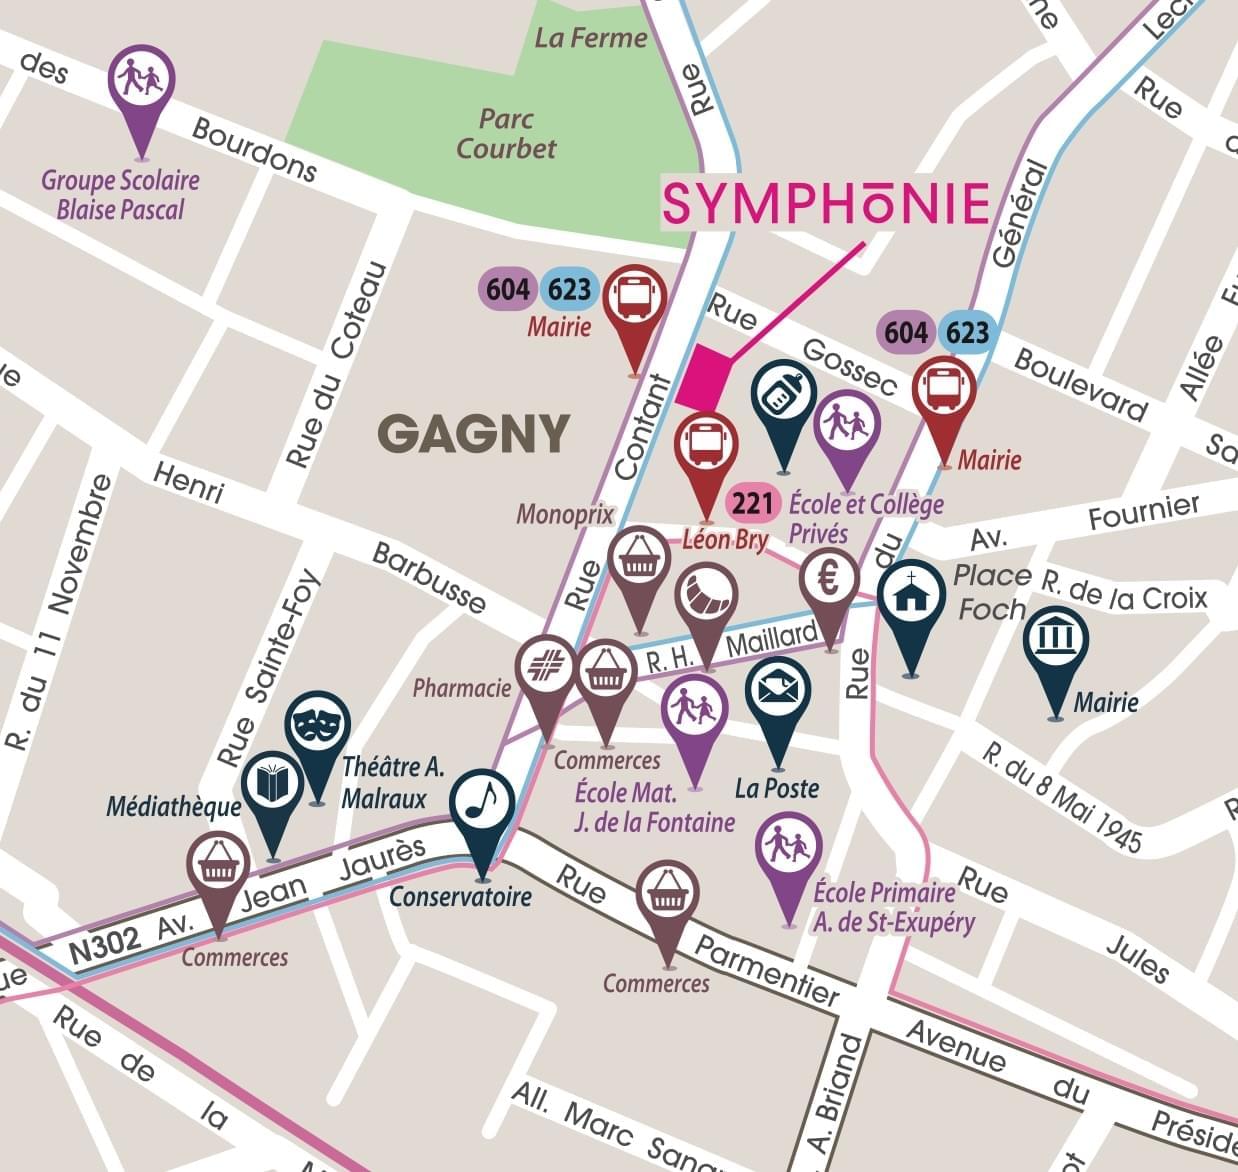 Résidence à Gagny RER E VIA PARIS à 30 minutes, Bus ligne 221, Ecoles et collège, Commerces,